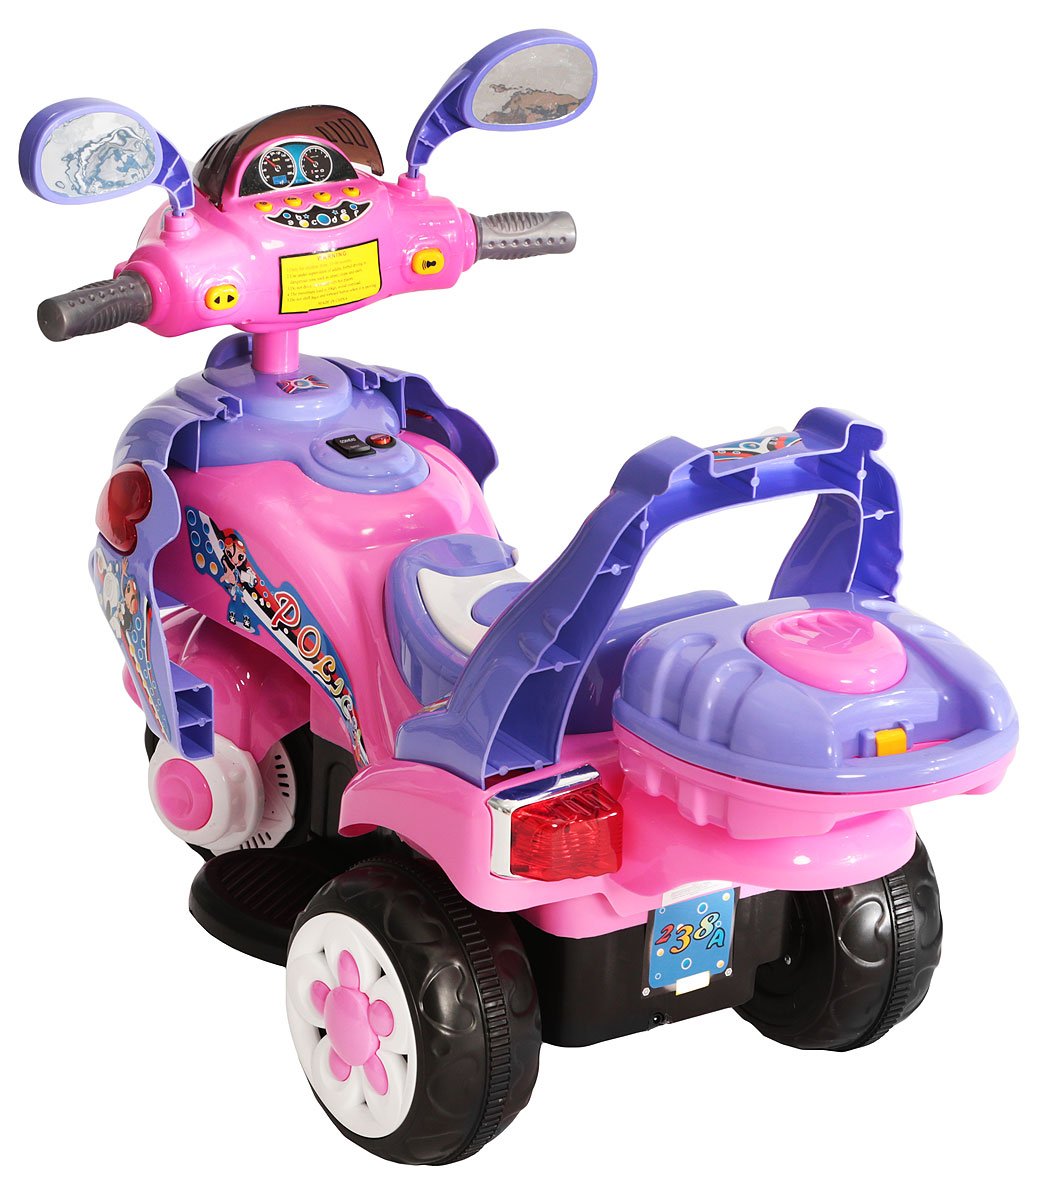 G120 мотоцикл детский на аккумуляторе с багажником цвет розовый